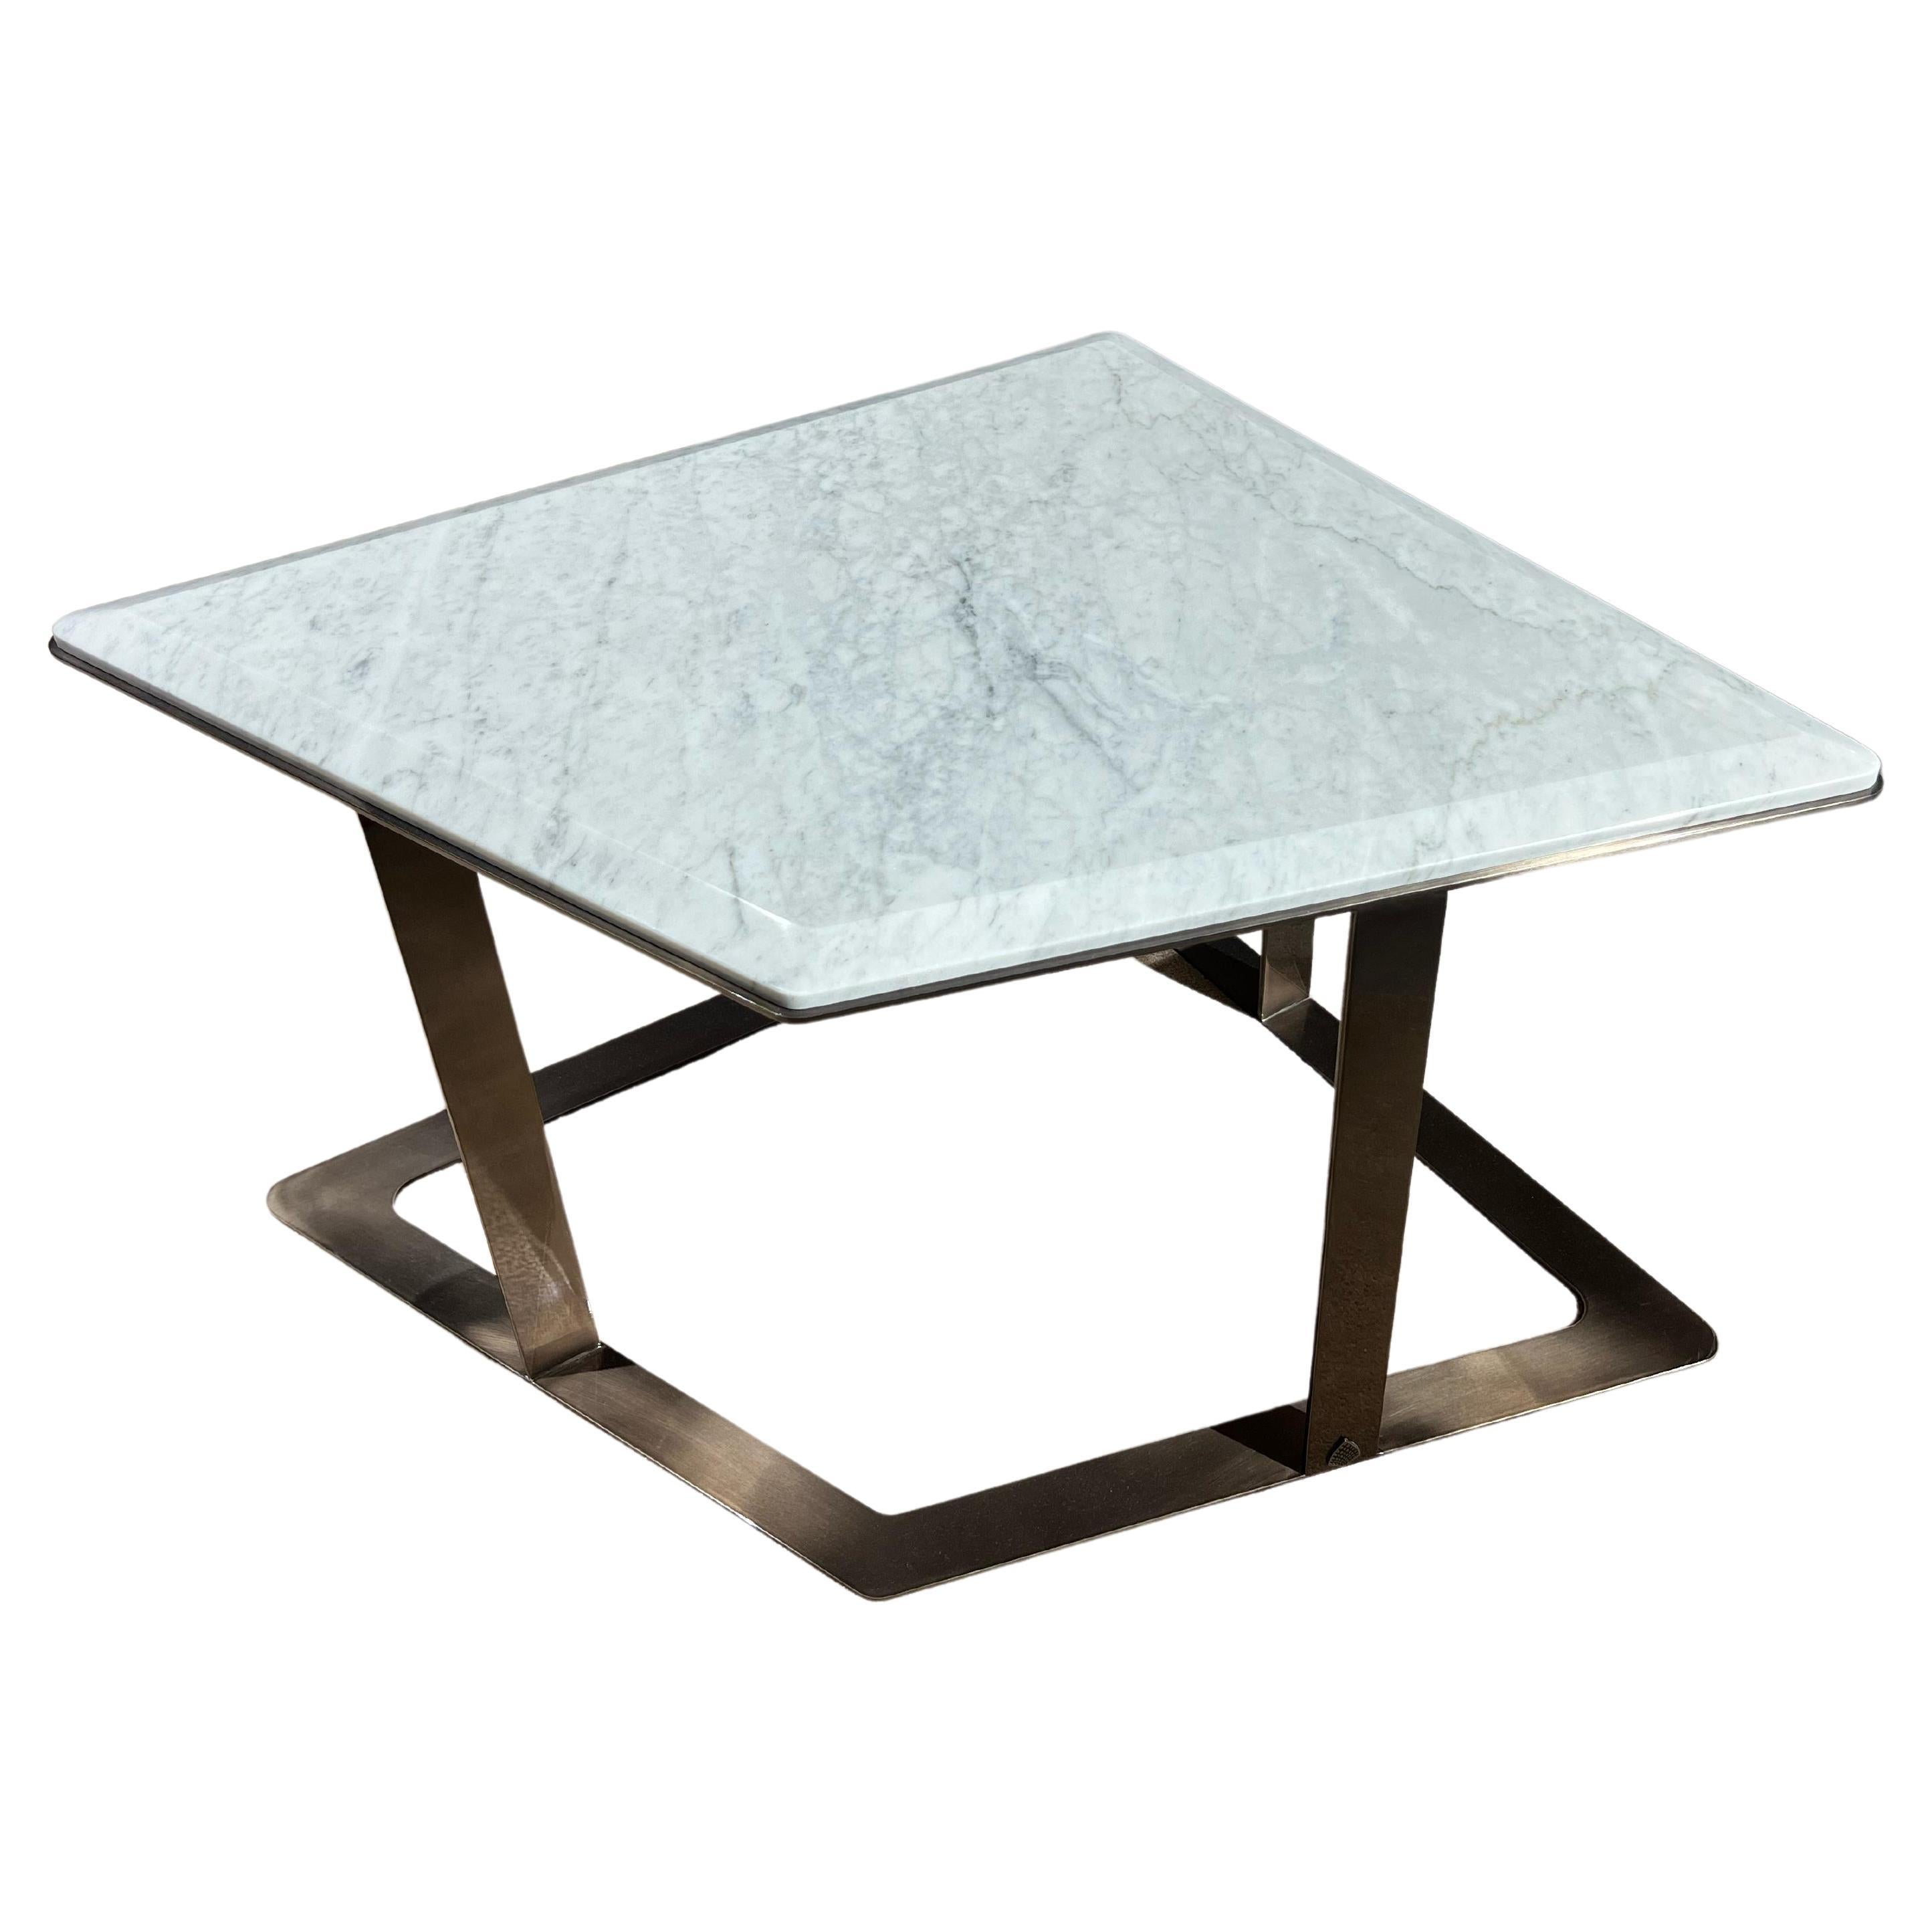 Arturo Terminale tavolino in marmo di carrara e struttura in acciaio nickel nero For Sale